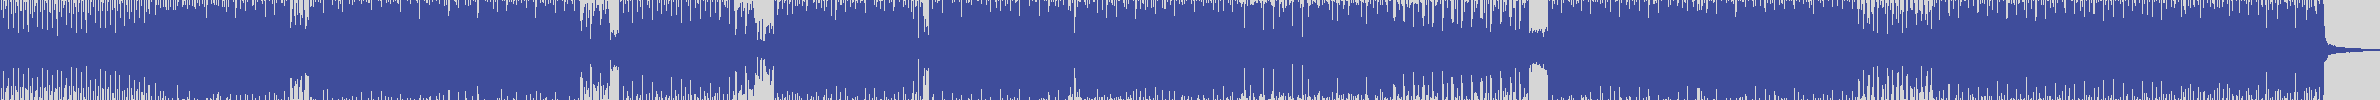 nf_boyz_records [NFY070] Poptek - Atomic System [K Mion Mix] audio wave form